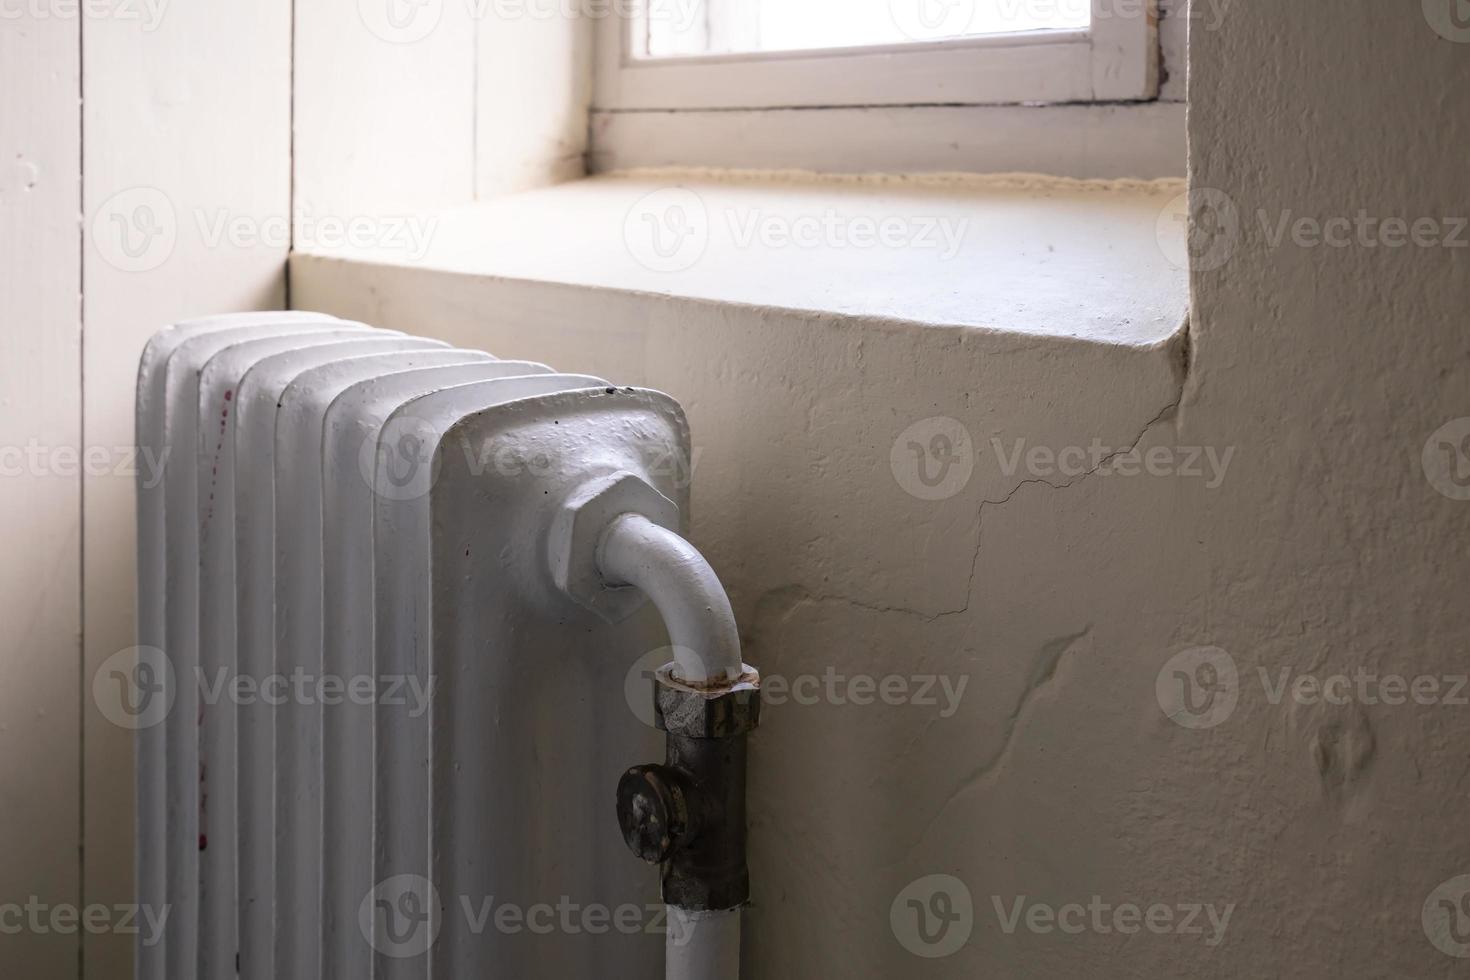 vieux radiateur avec une vanne qui éteint ou allume le chauffage. concept de crise et d'économie d'énergie, en raison de l'augmentation des coûts de chauffage. photo